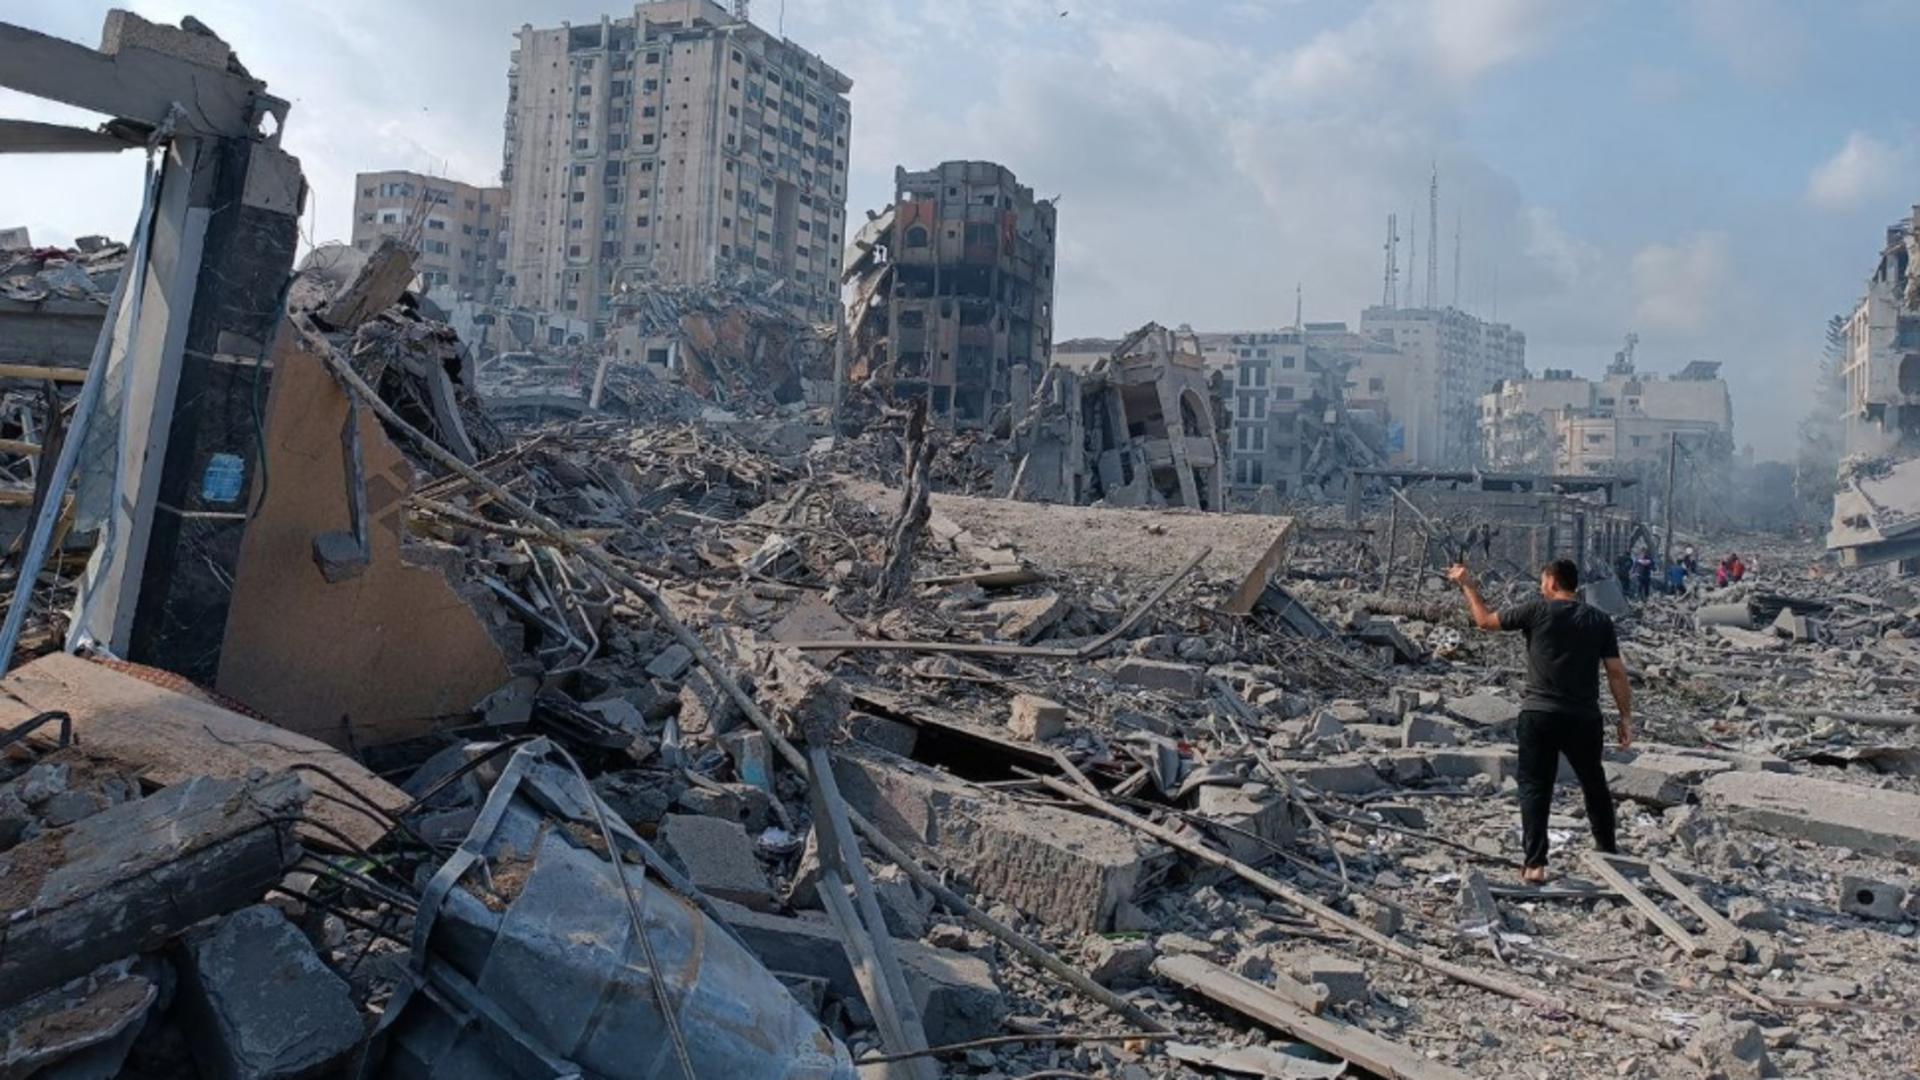 Orașul Gaza este o ruină, insă teroriștii se ascund în amplele rețele de tuneluri (Profimedia)